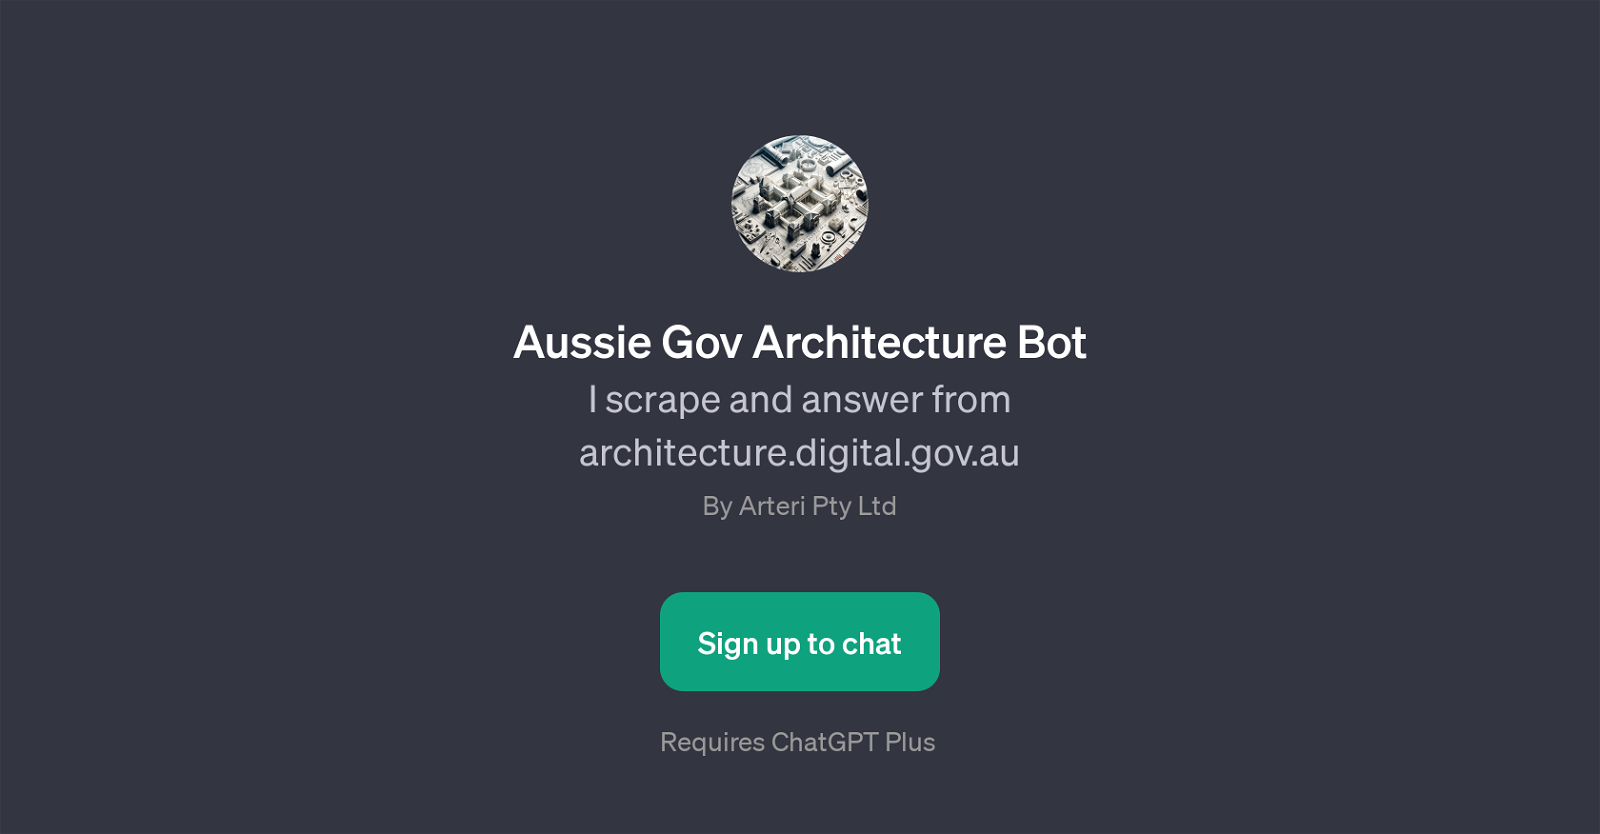 Aussie Gov Architecture Bot website